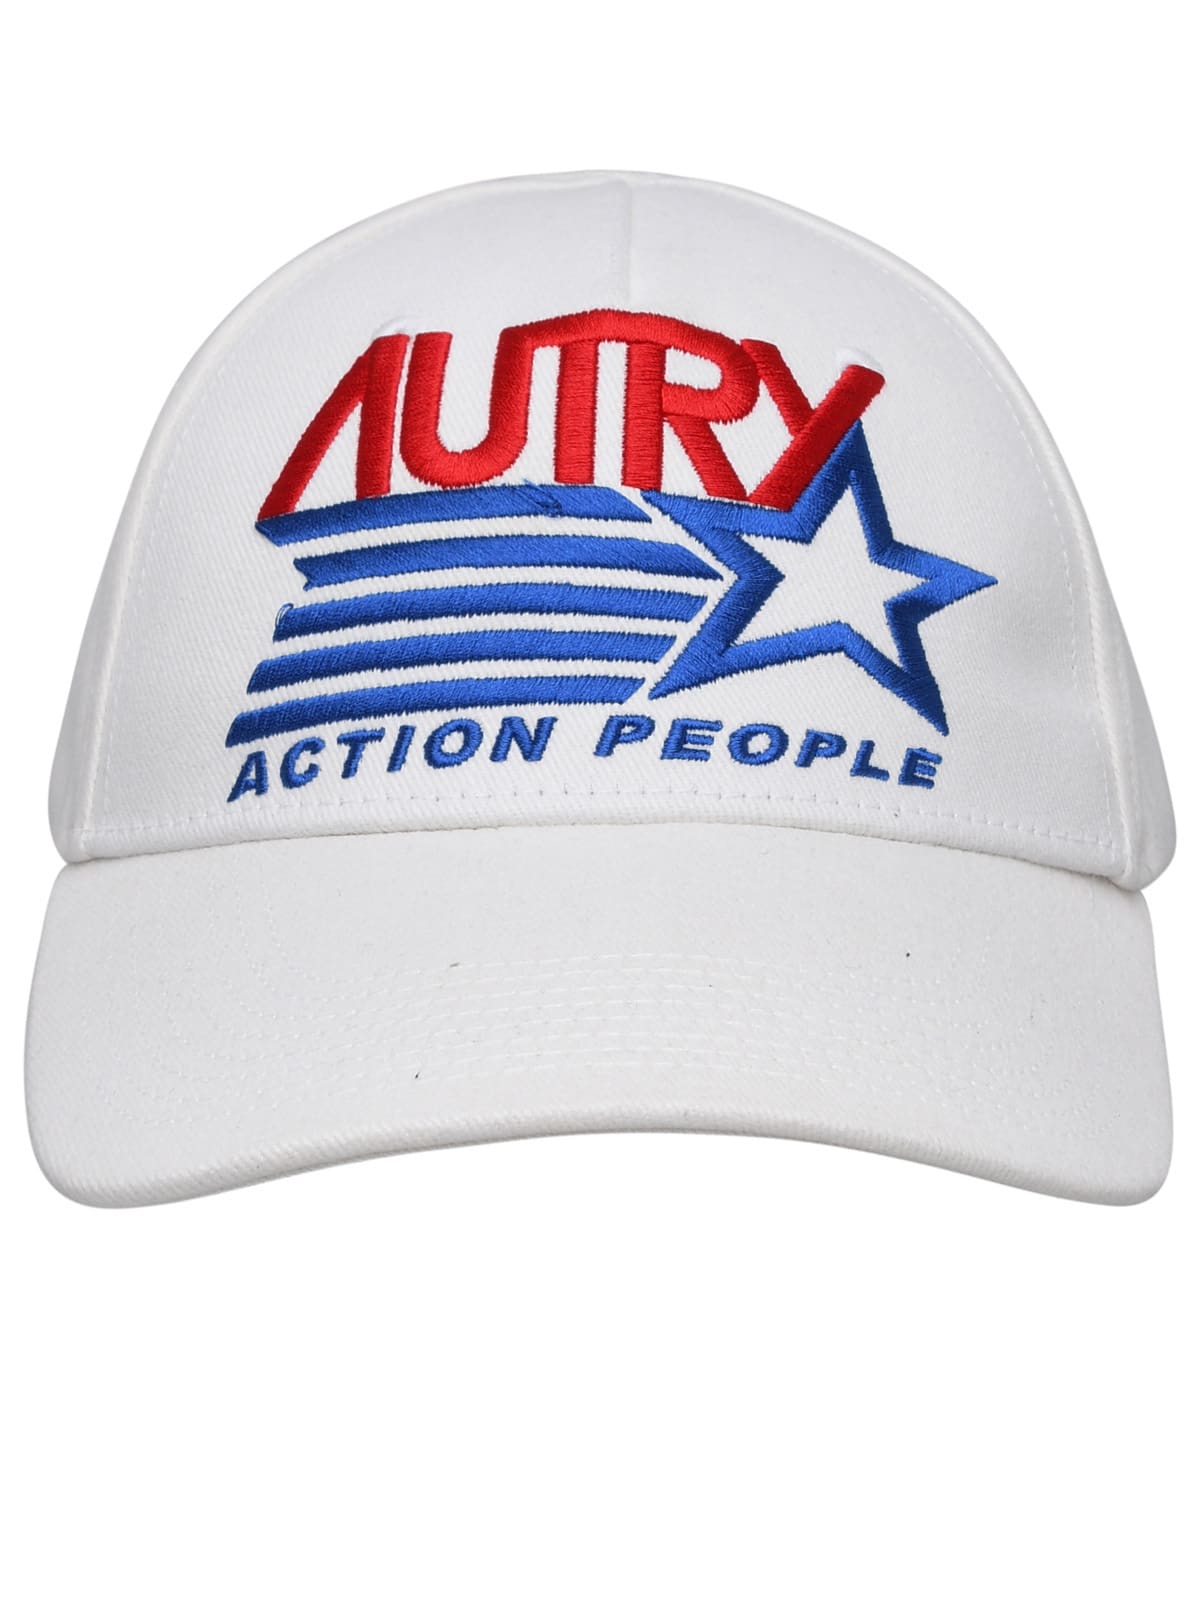 AUTRY WHITE COTTON CAP